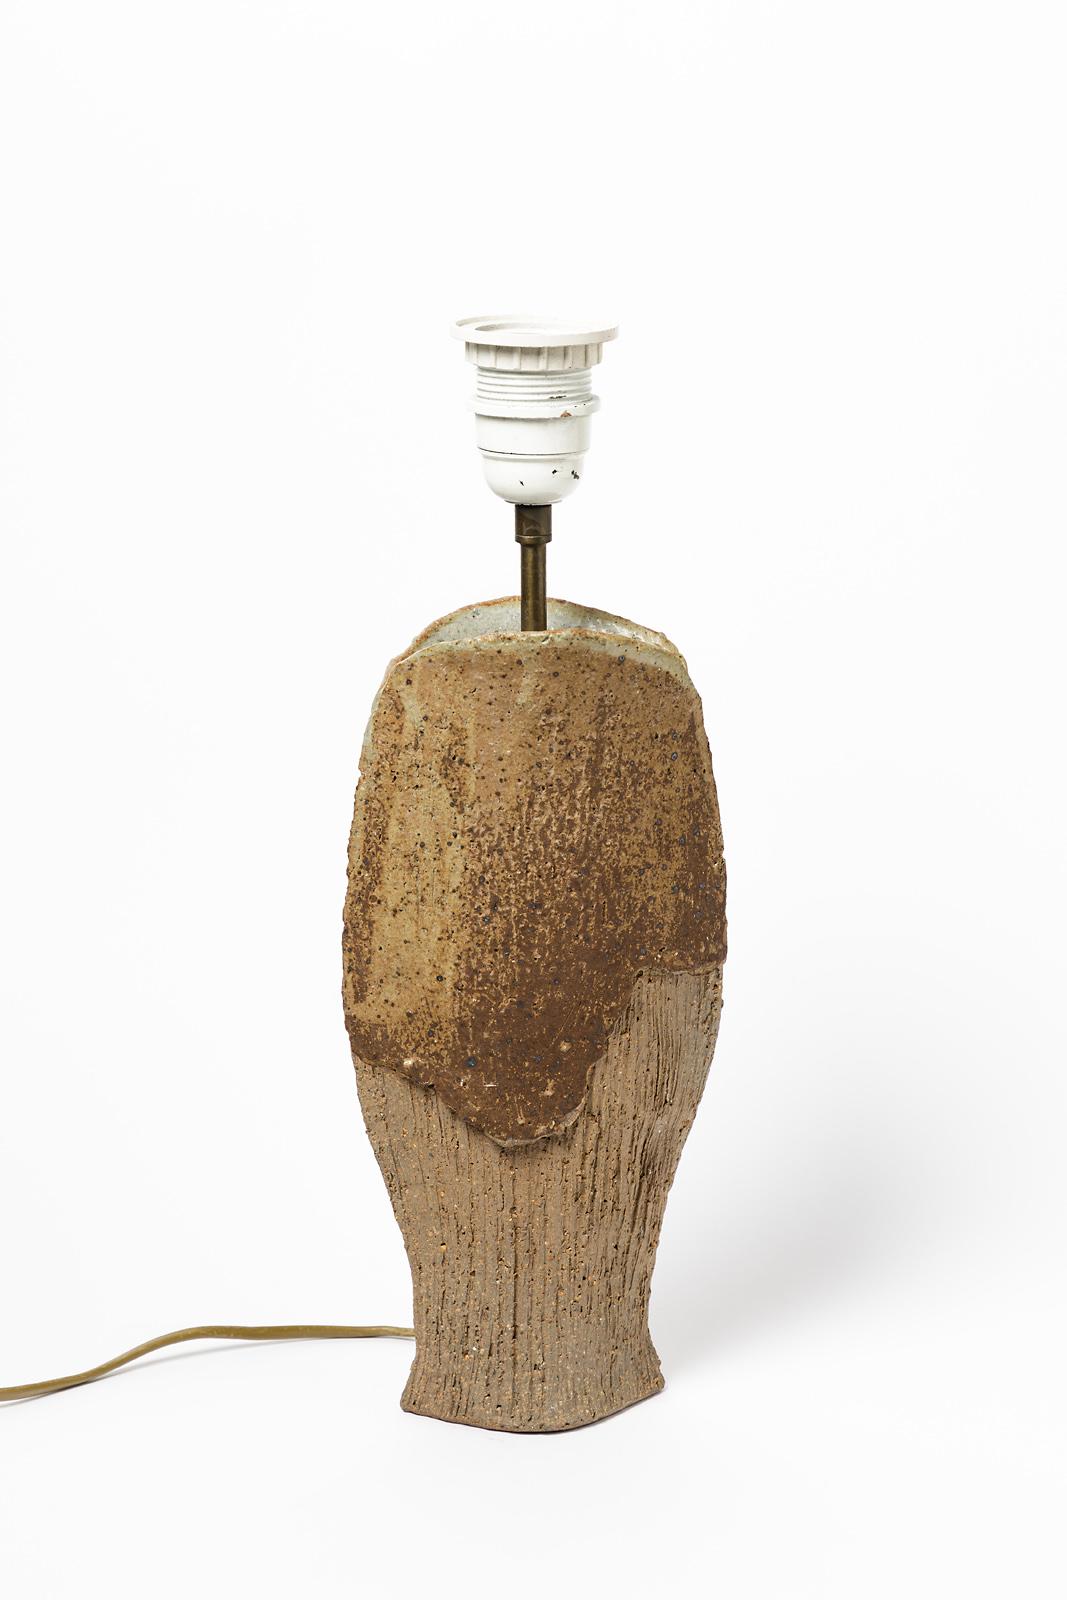 Odile Pichon

Einzigartige handgefertigte Keramik-Tischlampe

Signiert unter dem Sockel

Original perfekter Zustand

Keramik-Tischlampe aus braunem Steingut, um 1970

Originale elektrische Anlage

Maße: Keramik Höhe 30 cm
Groß 16